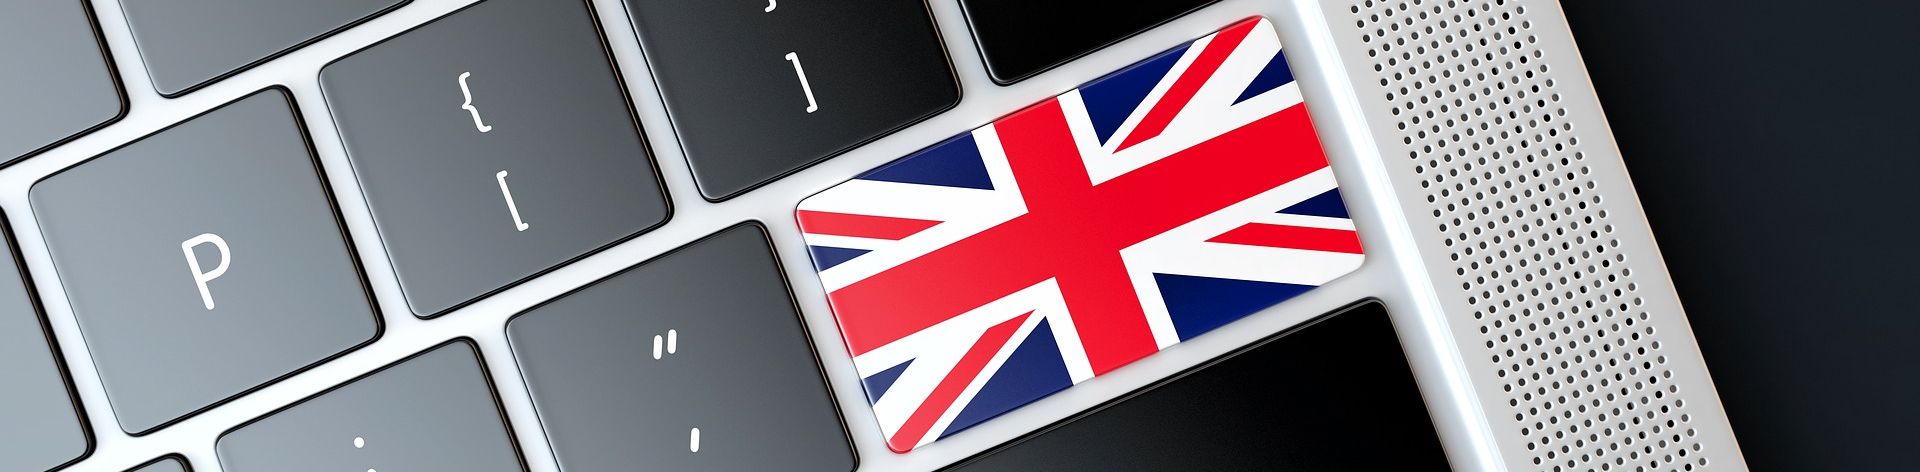 Angol laptop billentyűzet brit zászlóval